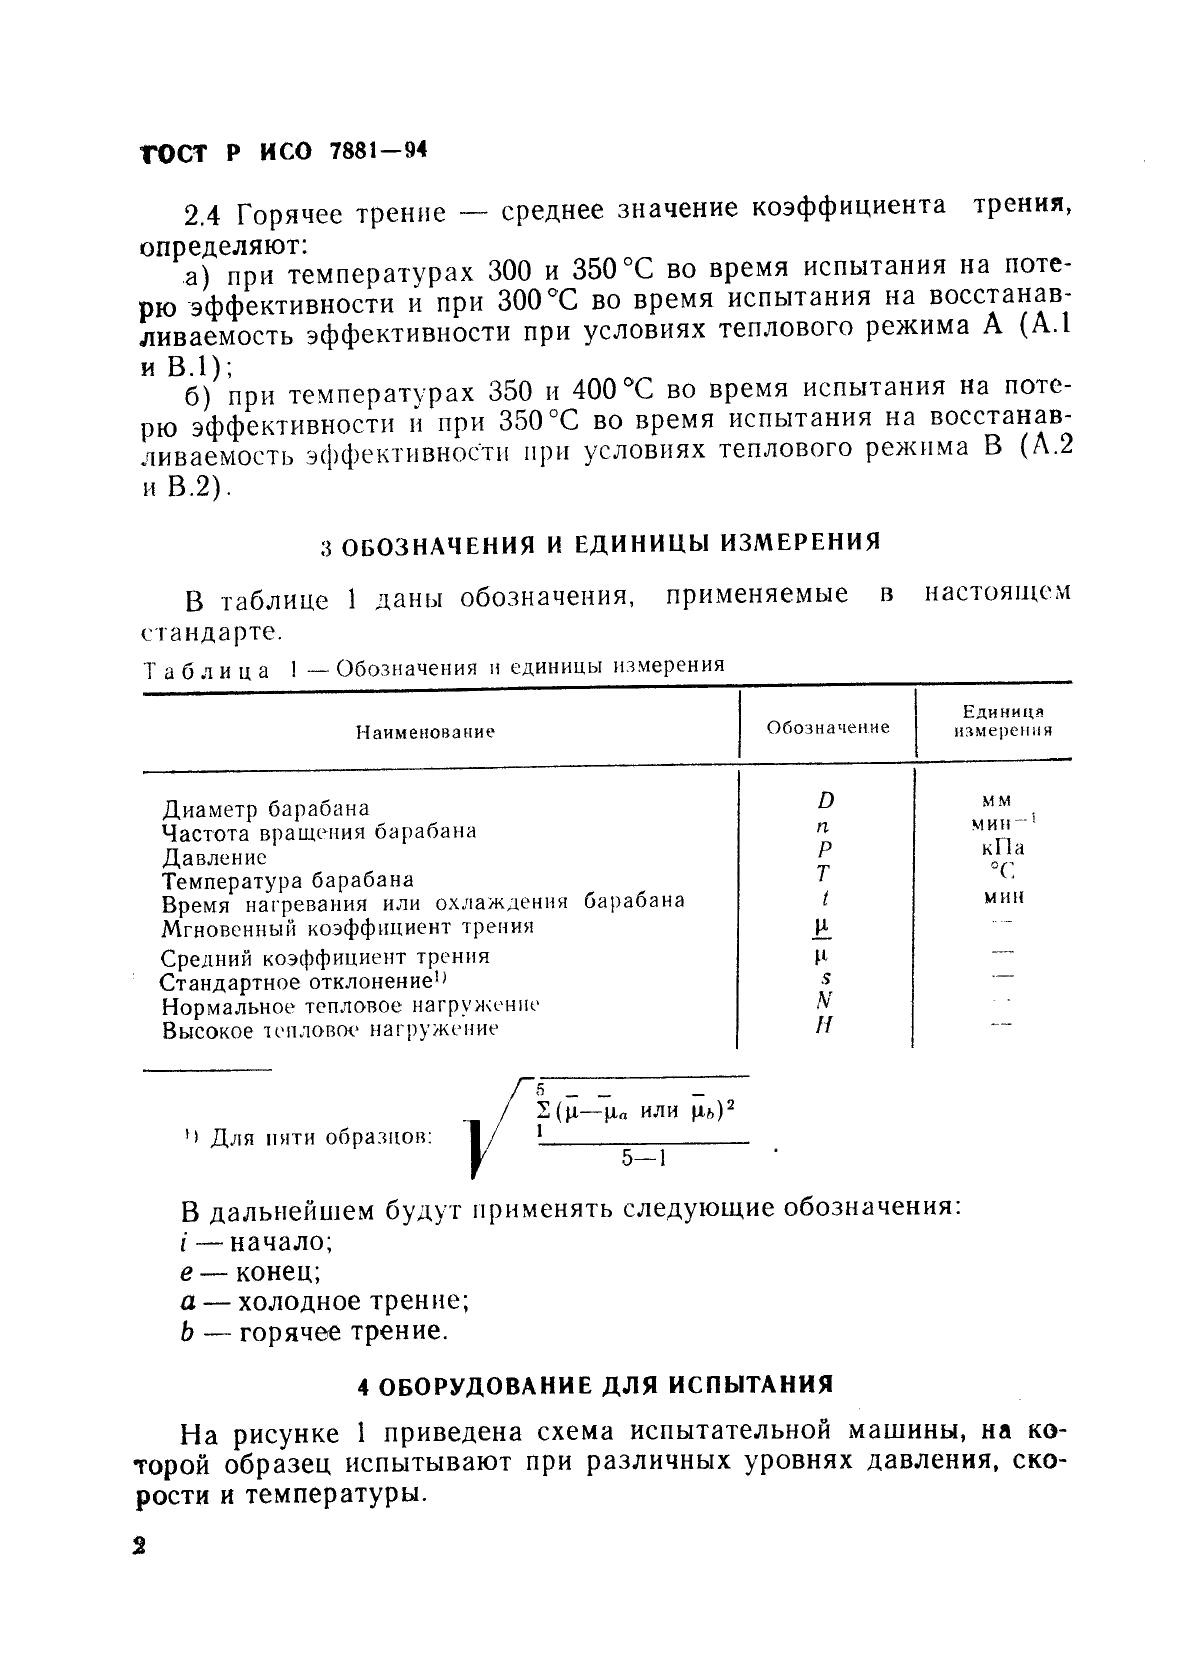 ГОСТ Р ИСО 7881-94